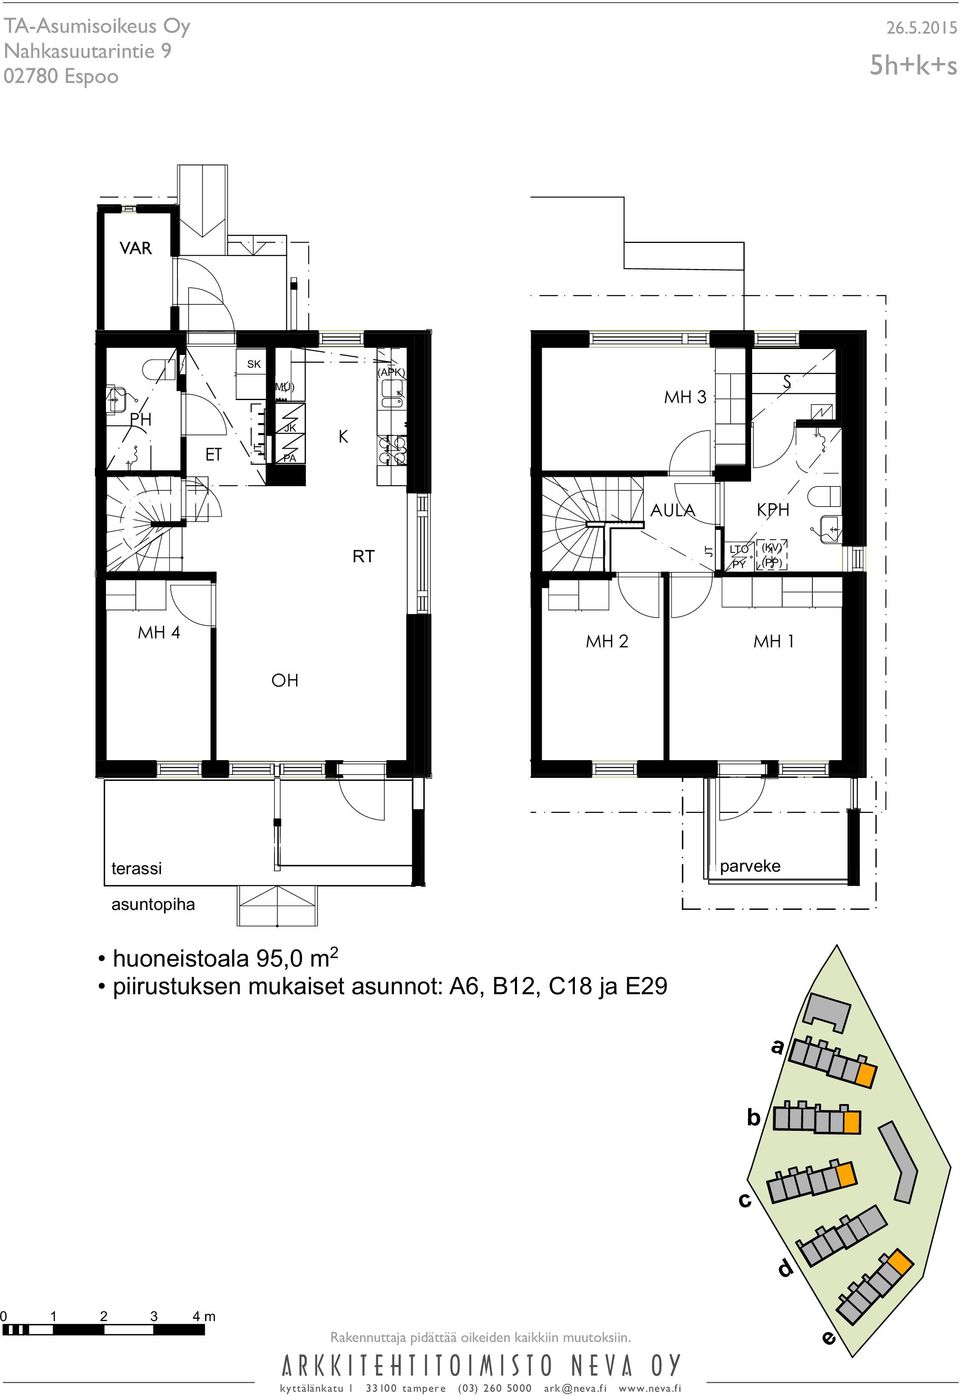 piirustuksen mukaiset asunnot: A6, B12, C18 ja E29 a b